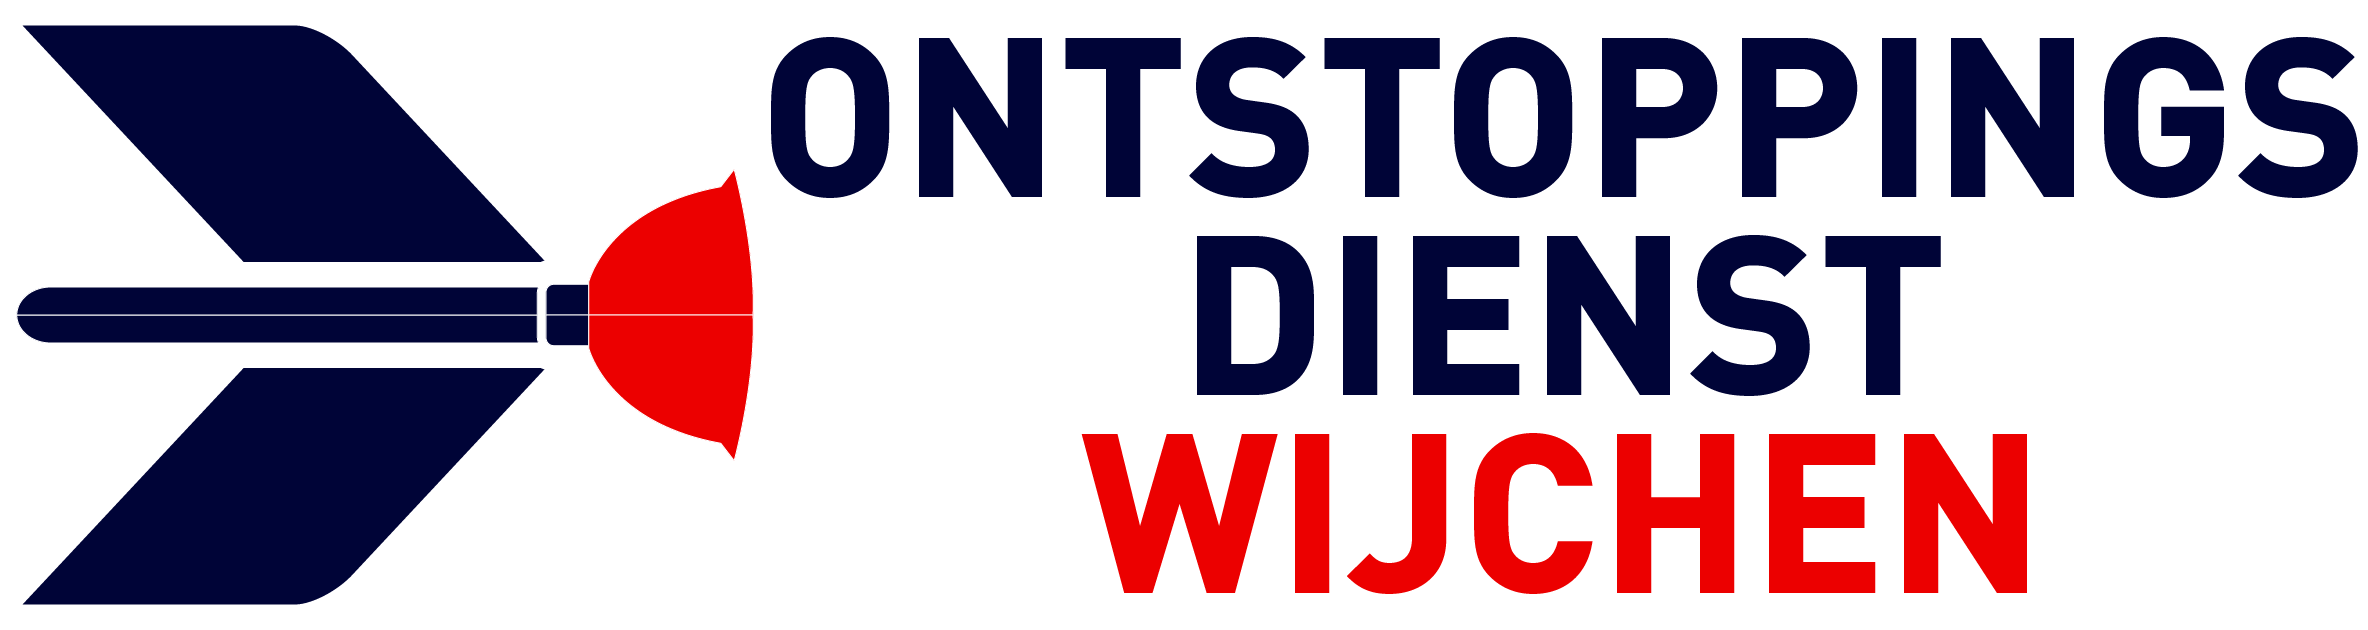 Ontstoppingsdienst Wijchen logo